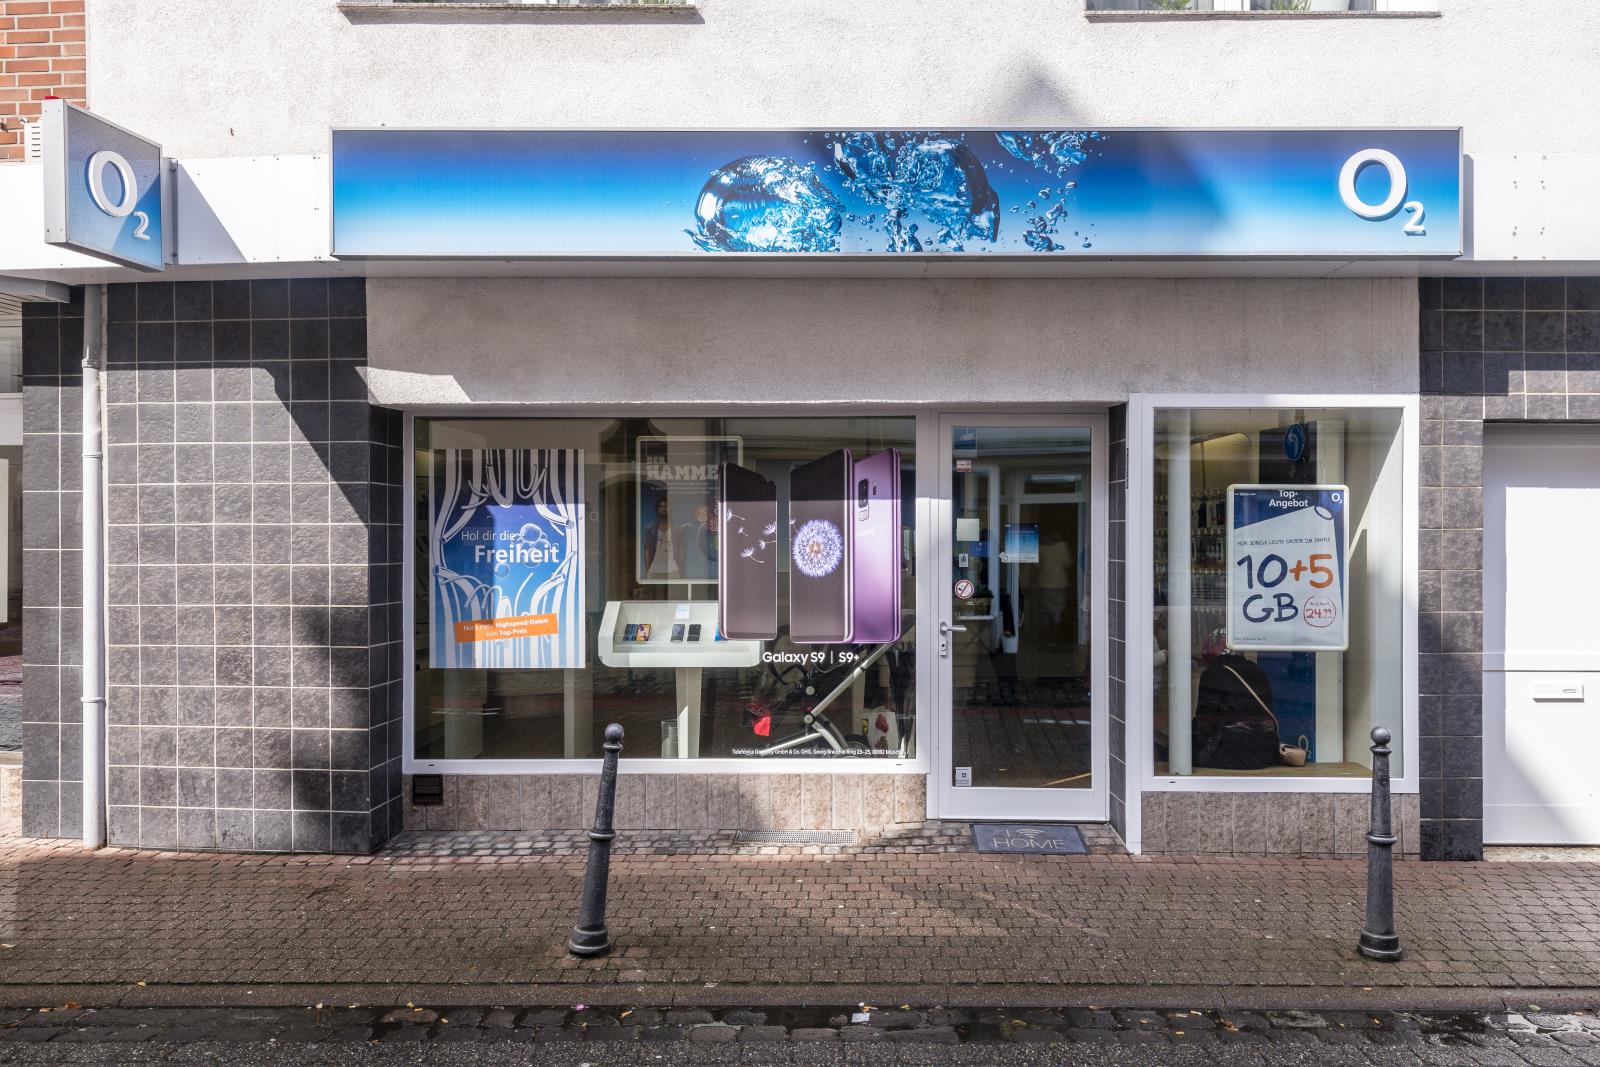 o2 Shop, Brückstr. 2-4 in Erkelenz